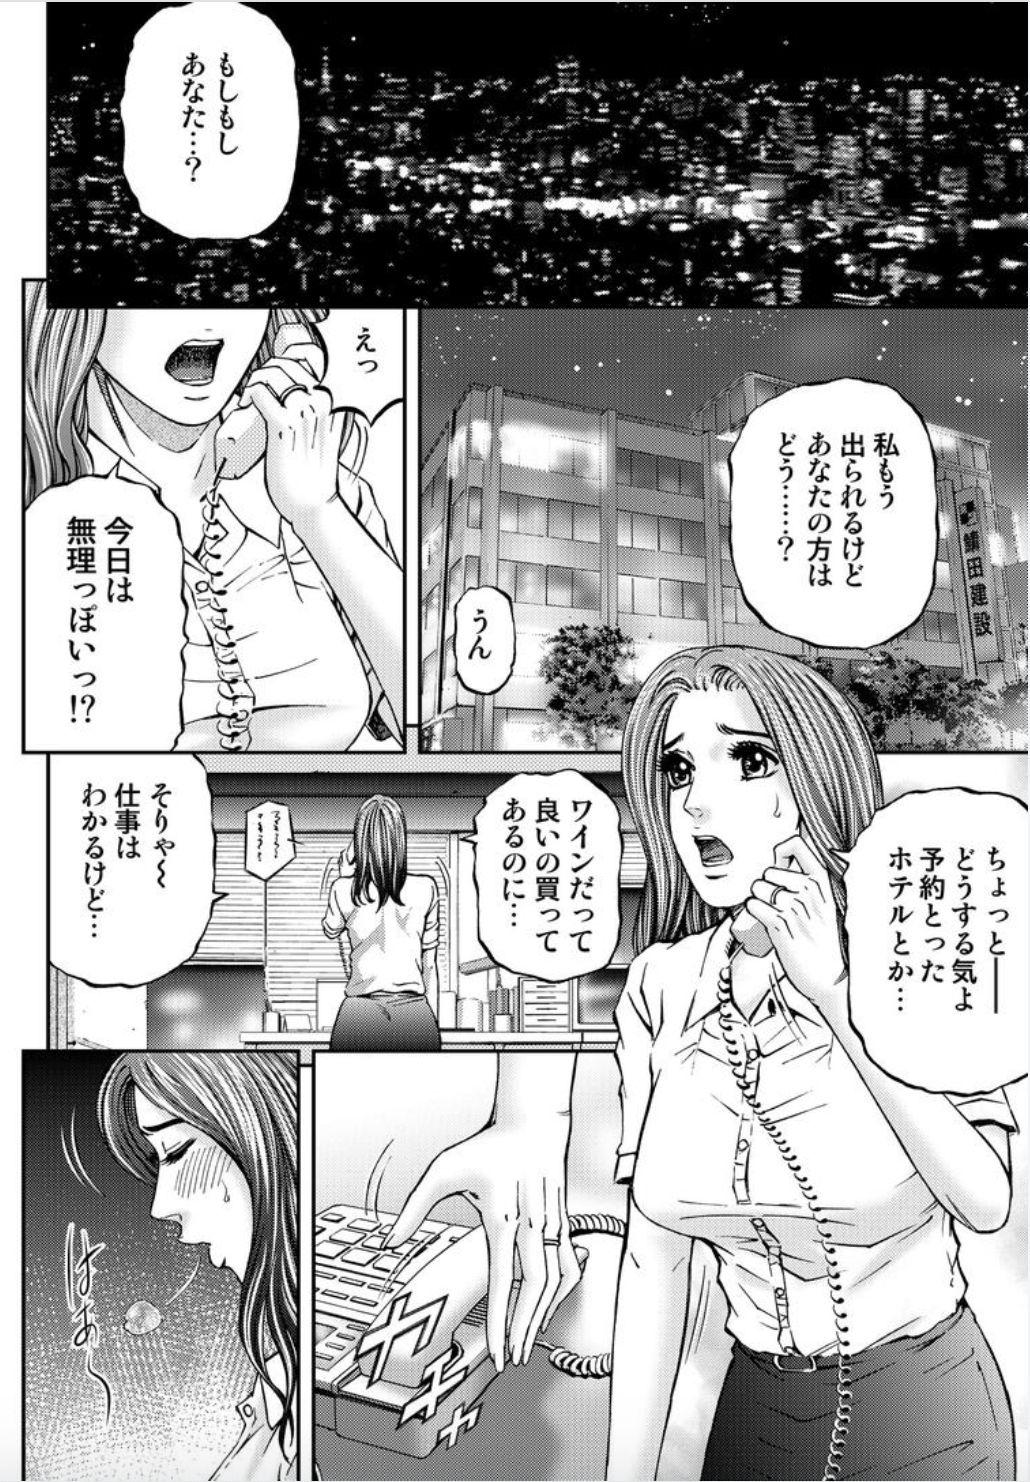 Girl Girl Onna-tachi ga Iku Toki... Ero Drama Vol. 2 X'mas Wife Swing - Page 4